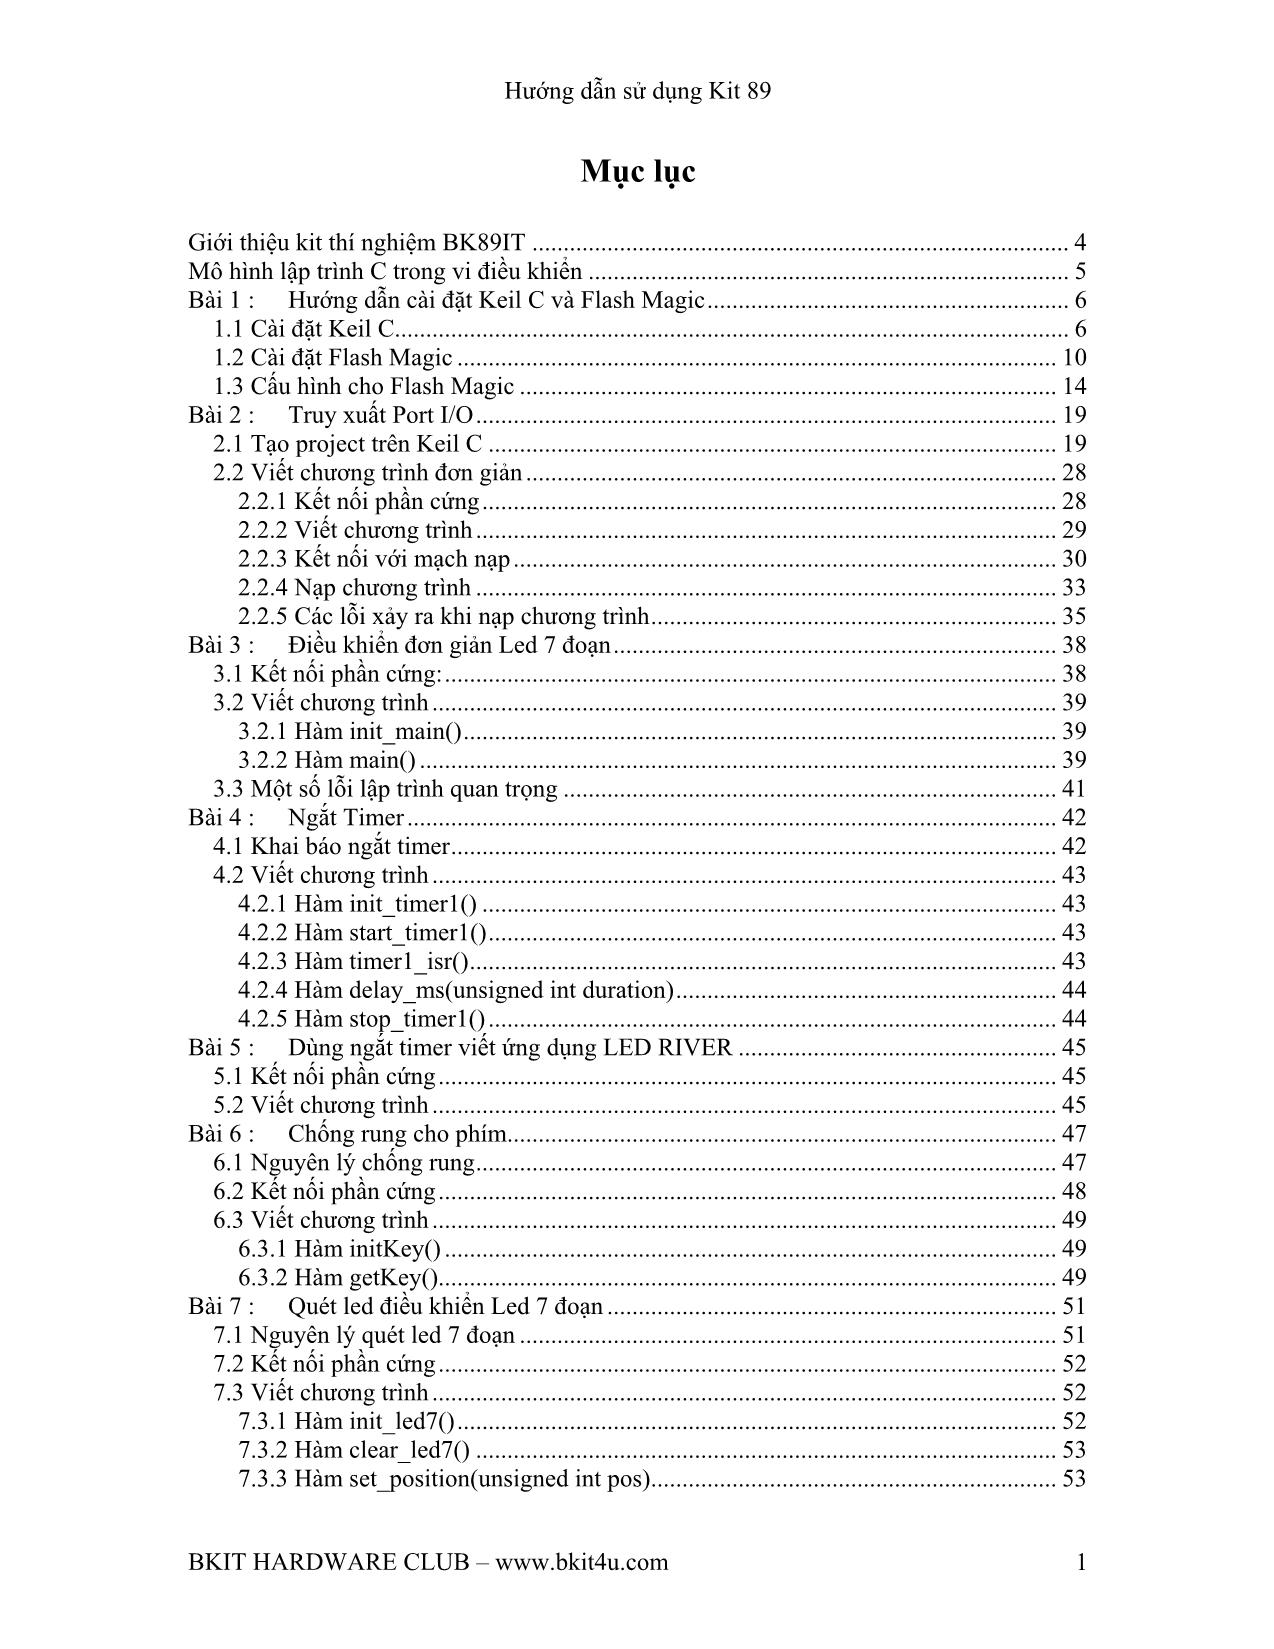 Hướng dẫn sử dụng Kit 89 trang 1